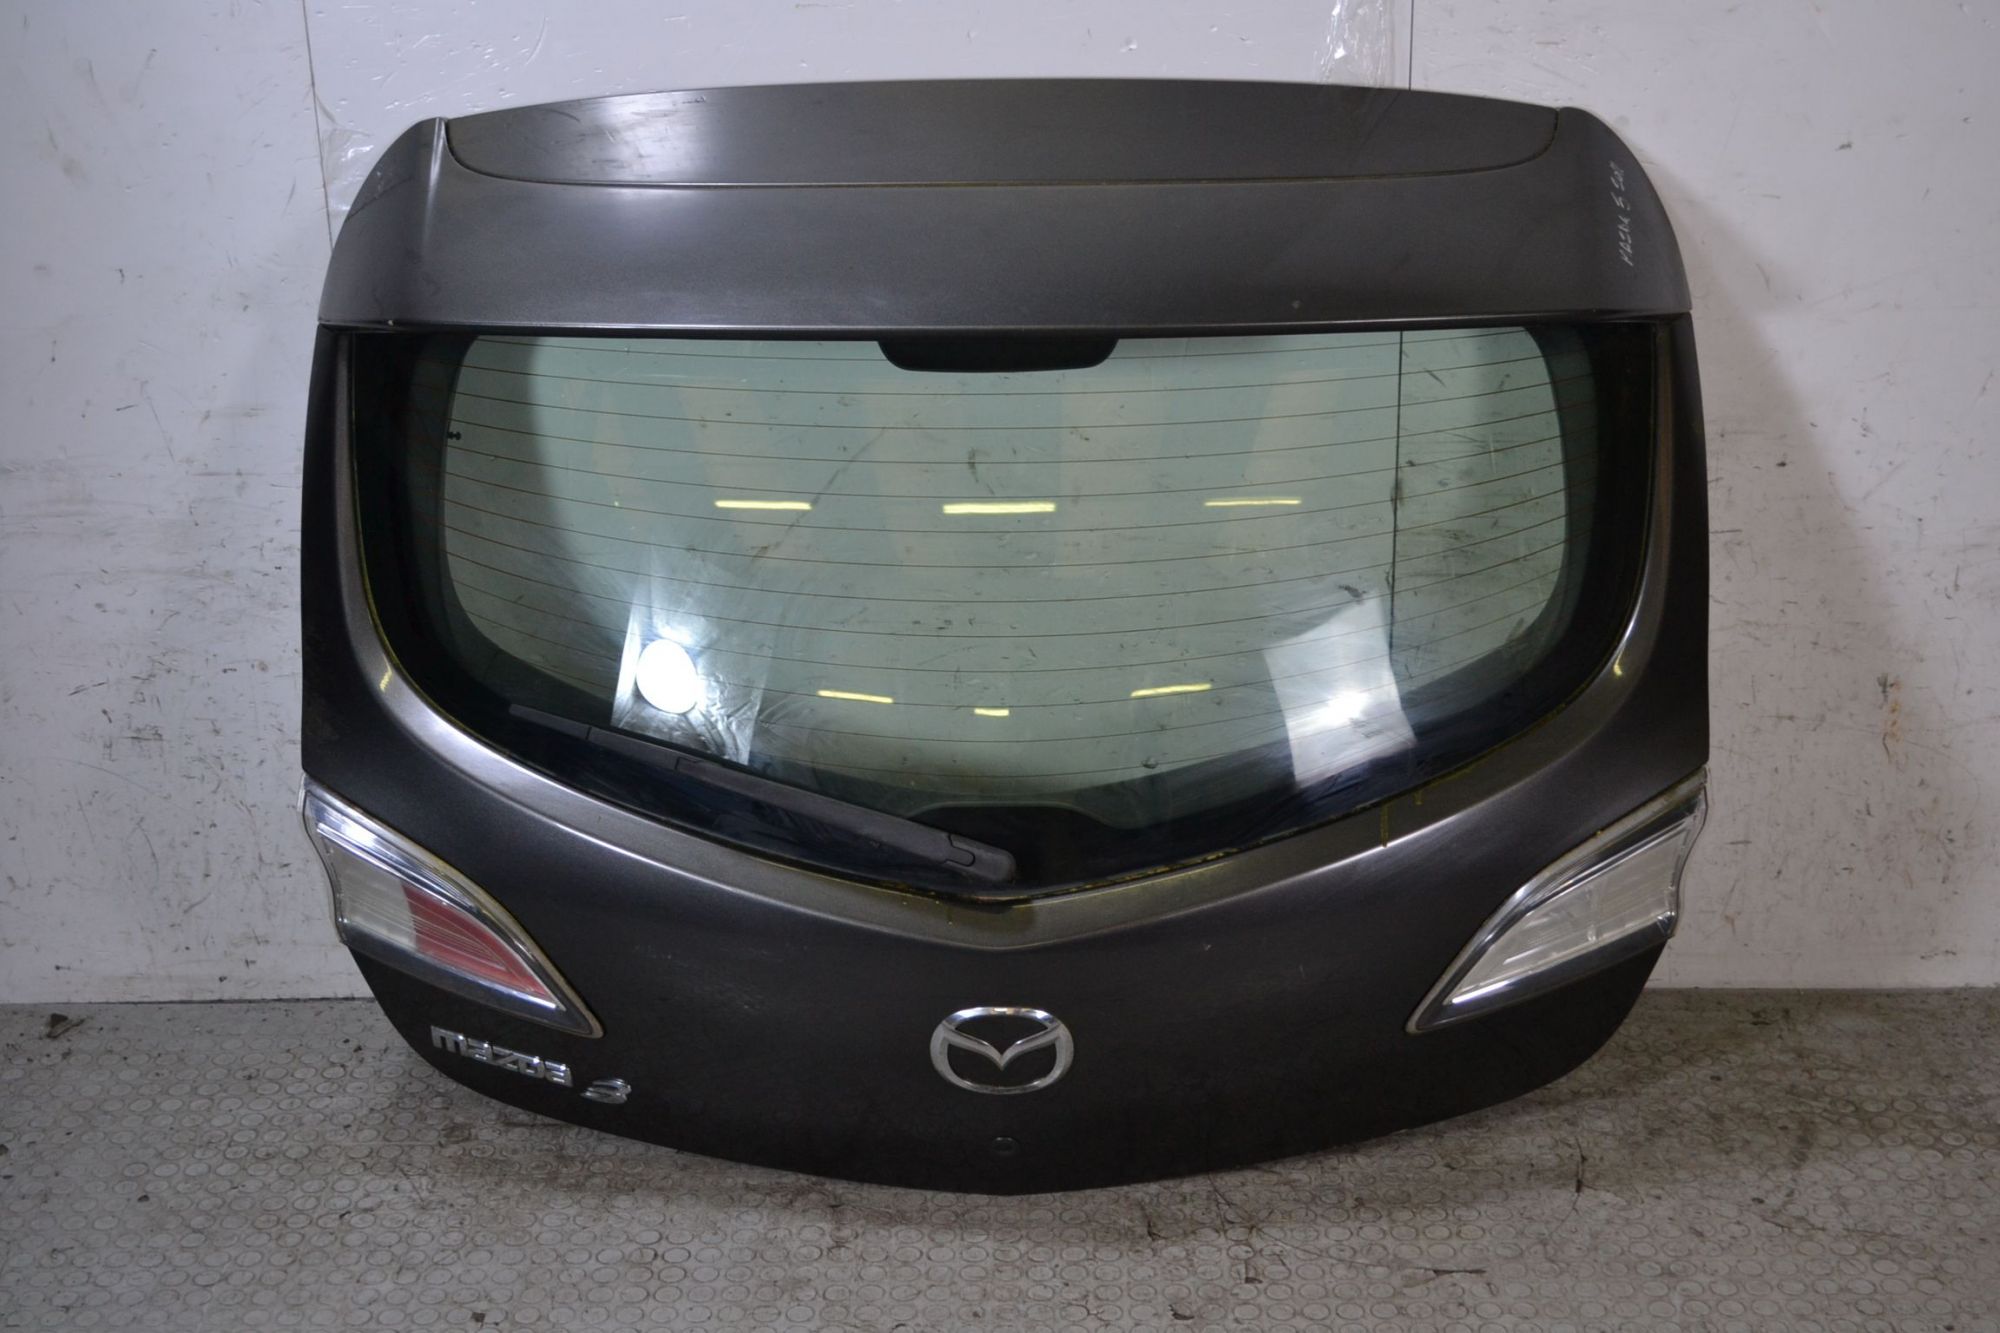 Portellone Bagagliaio Posteriore Mazda 3 dal 2009 al 2013  1698045183216